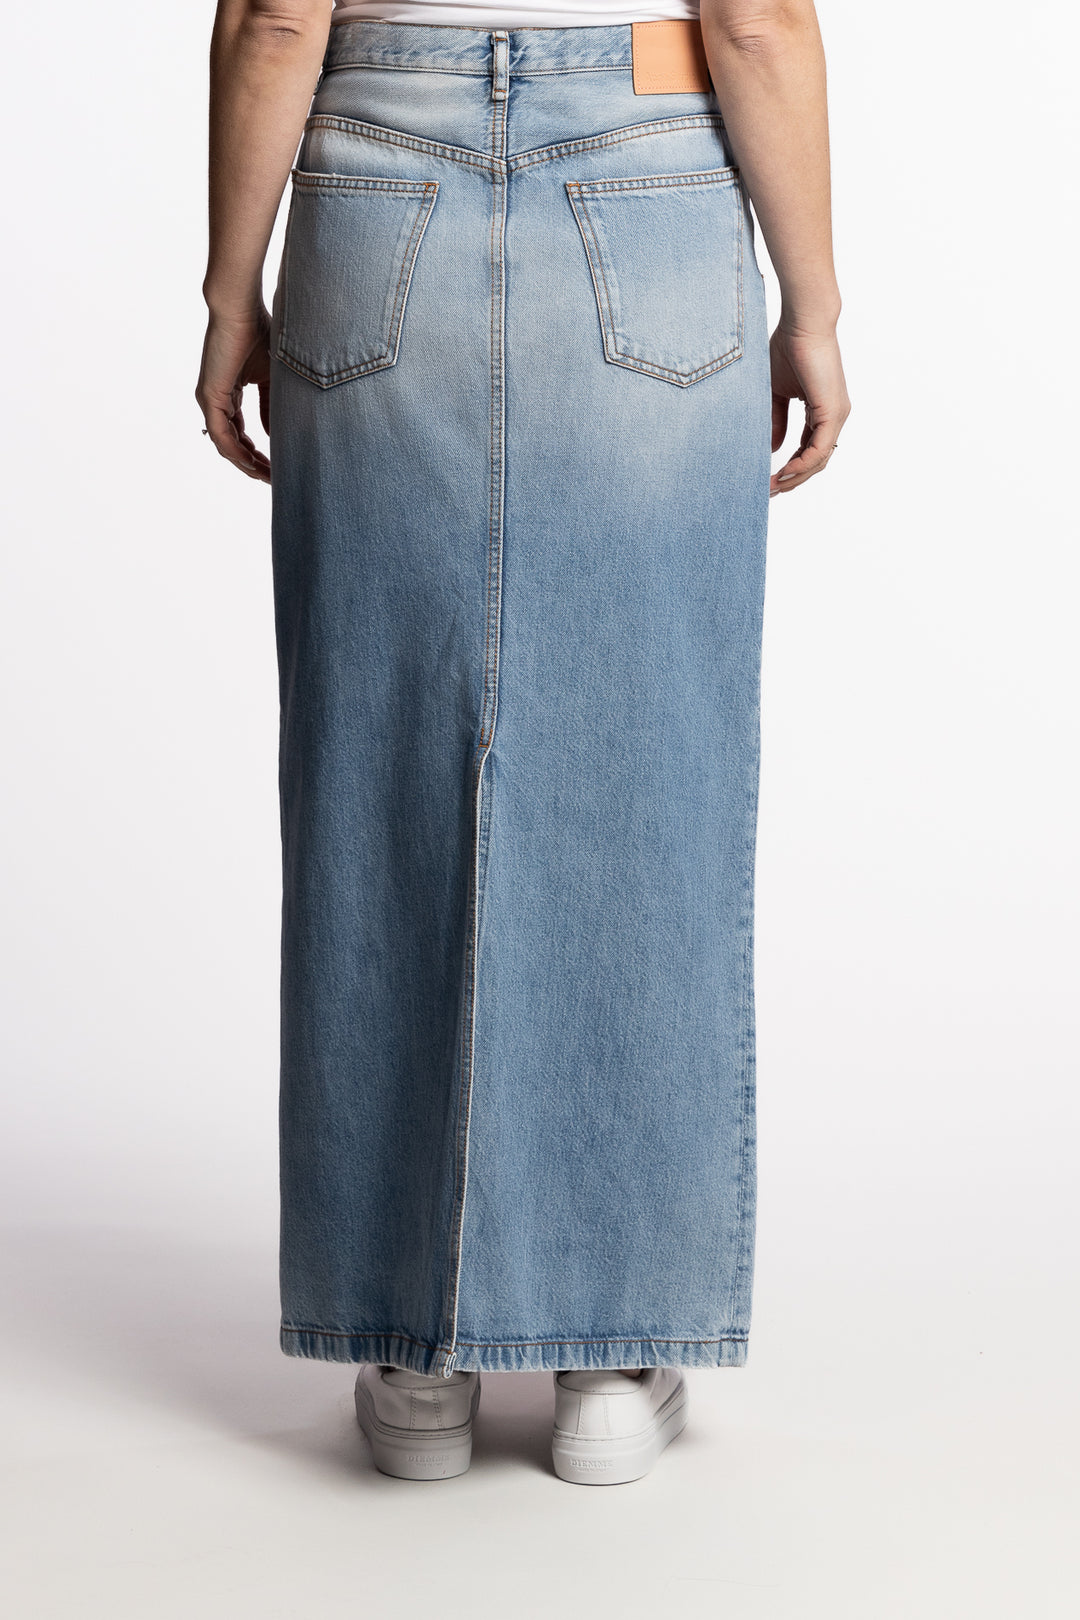 Mid-length Denim skirt- Light Blue